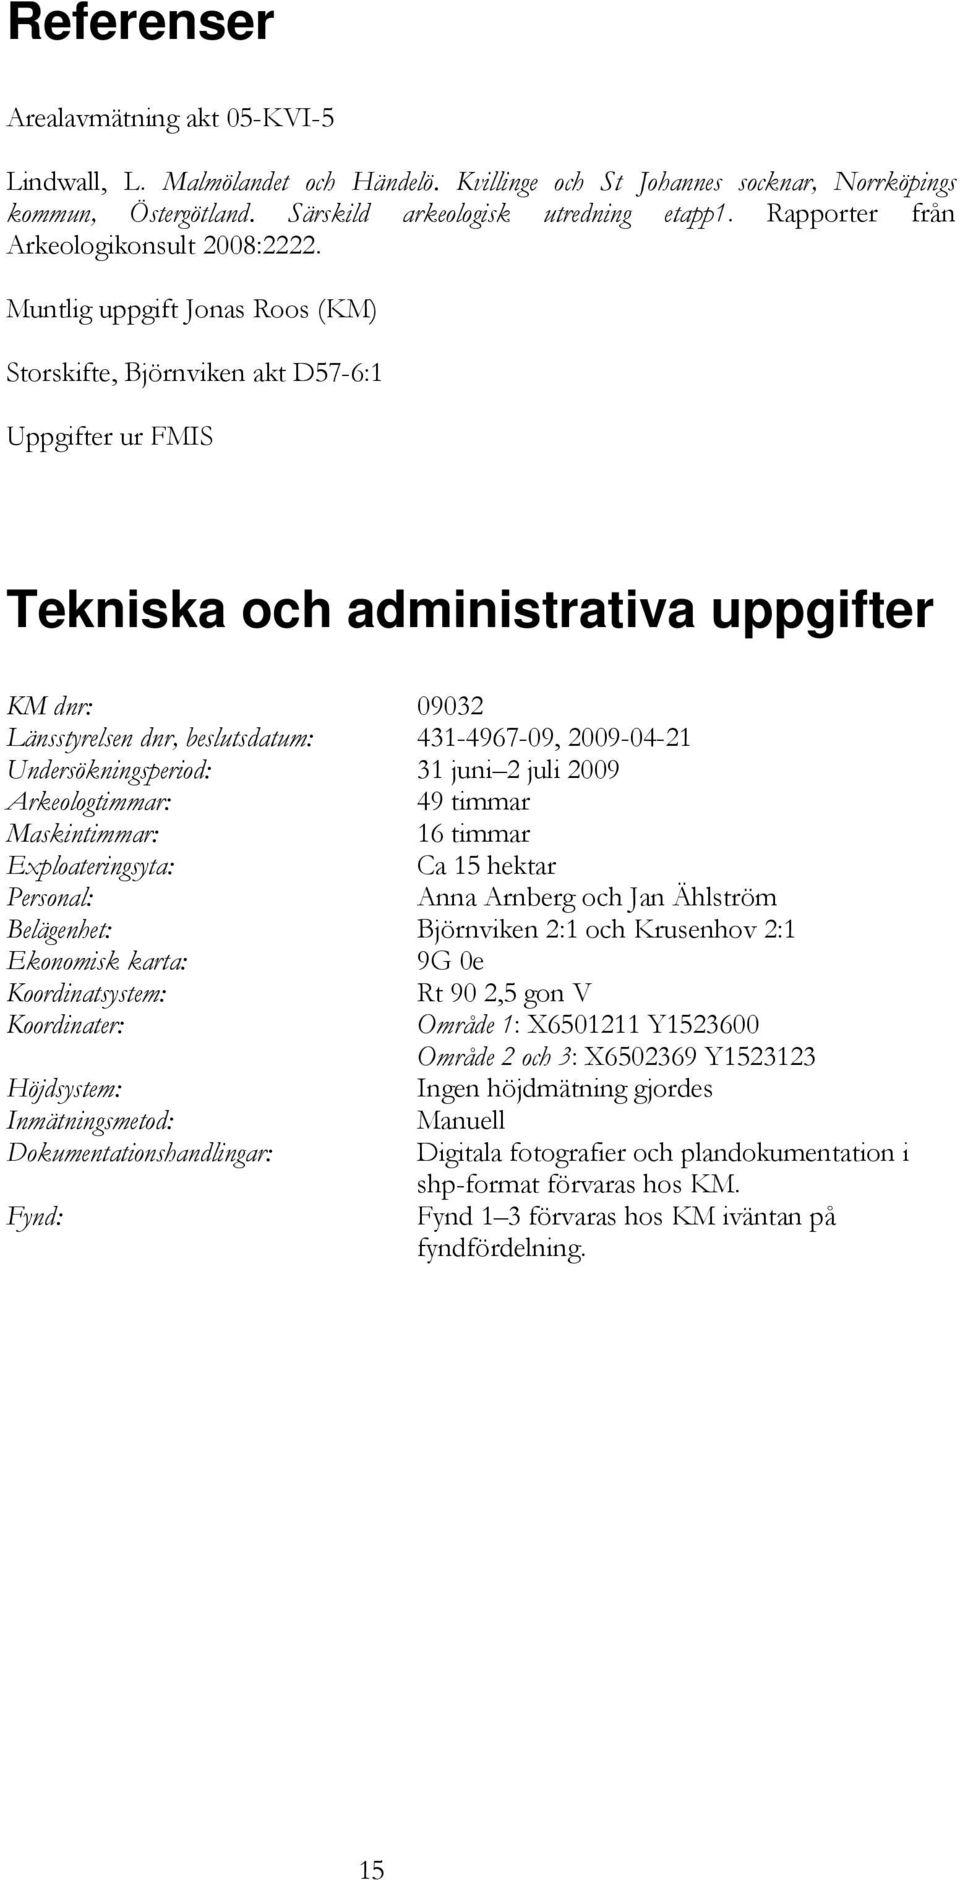 Muntlig uppgift Jonas Roos (KM) Storskifte, Björnviken akt D57-6:1 Uppgifter ur FMIS Tekniska och administrativa uppgifter KM dnr: 09032 Länsstyrelsen dnr, beslutsdatum: 431-4967-09, 2009-04-21